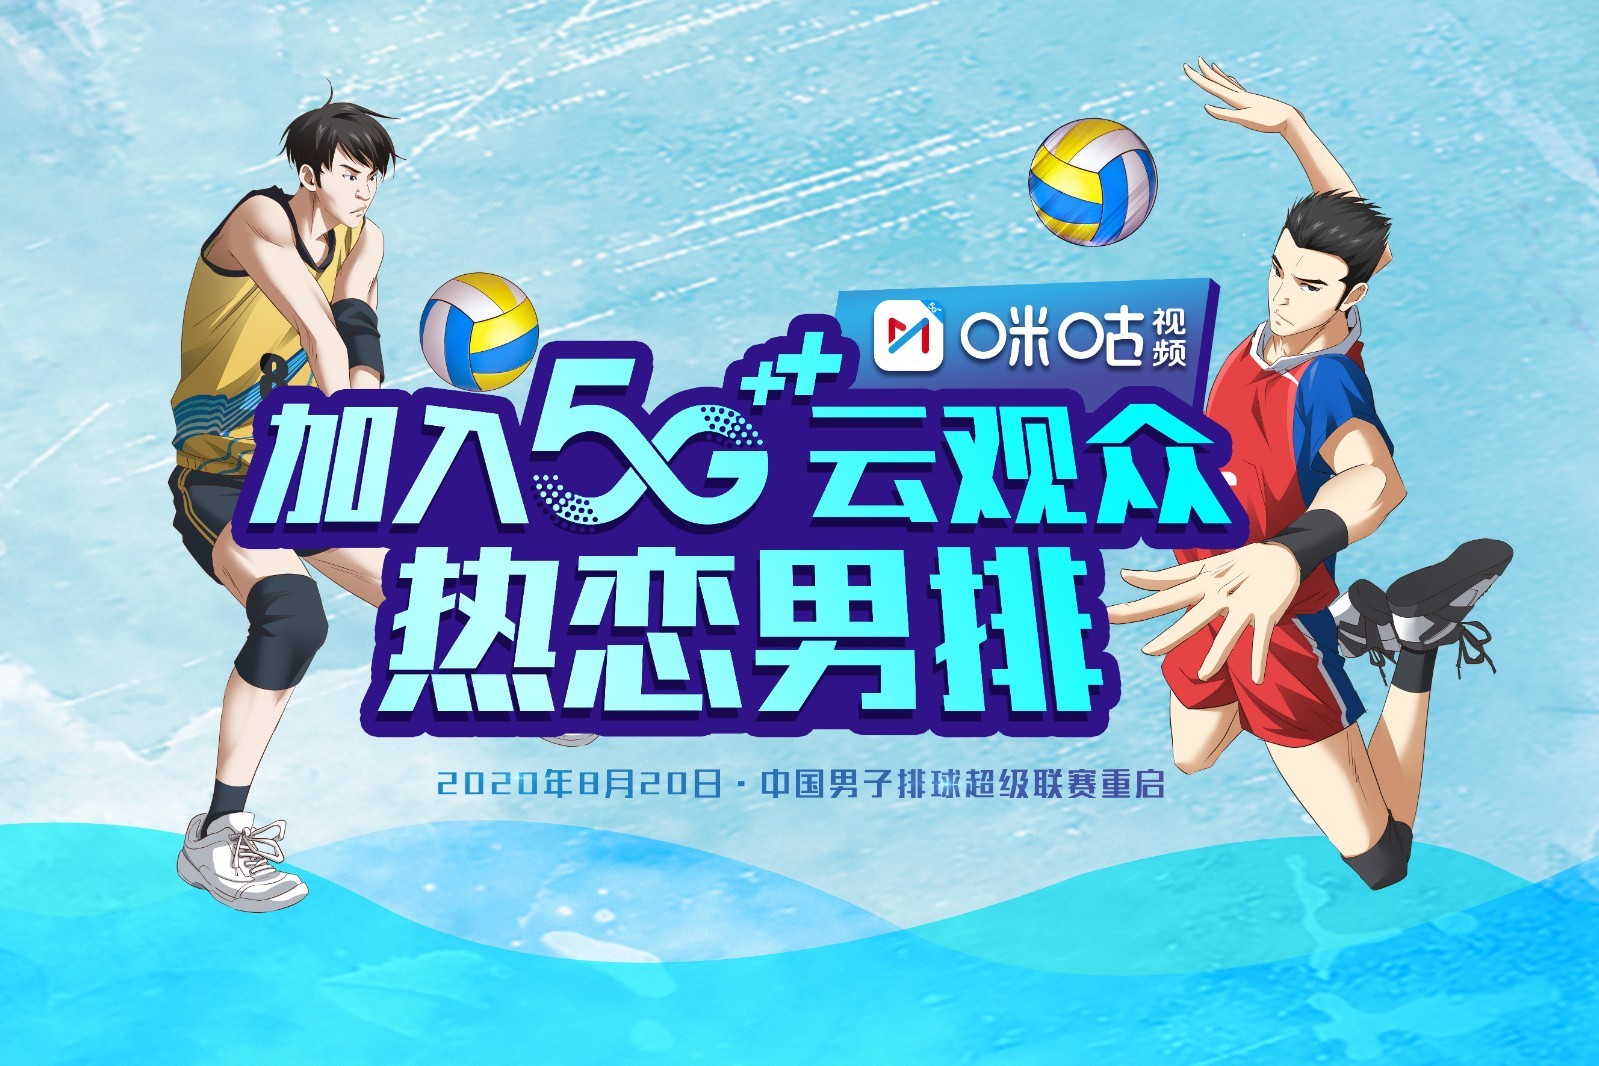 8月20日男排联赛重启 中国移动咪咕5G黑科技助力“云上排超季”